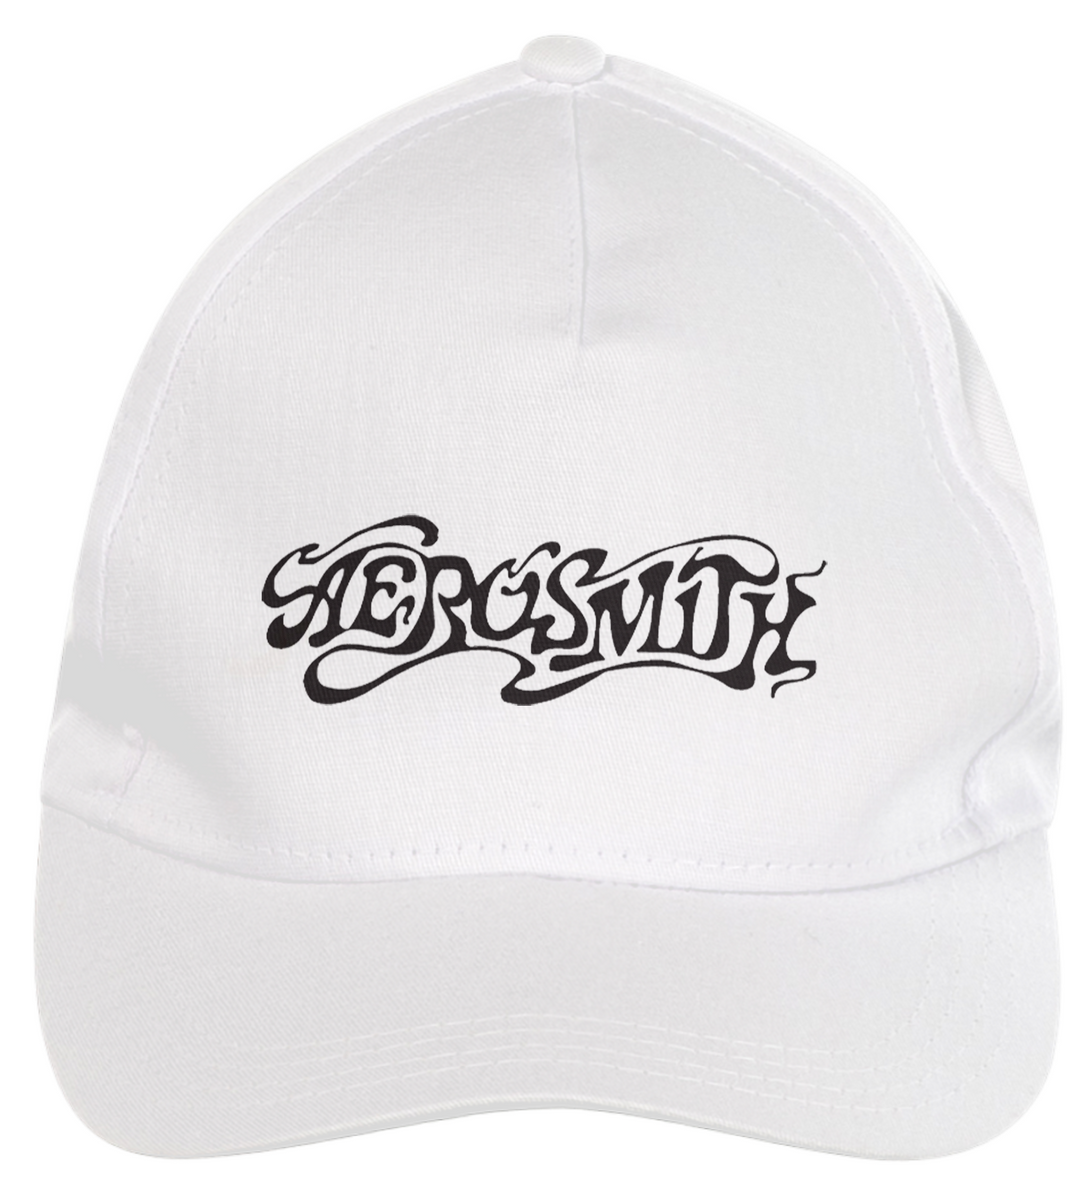 Nome do produto: Aerosmith